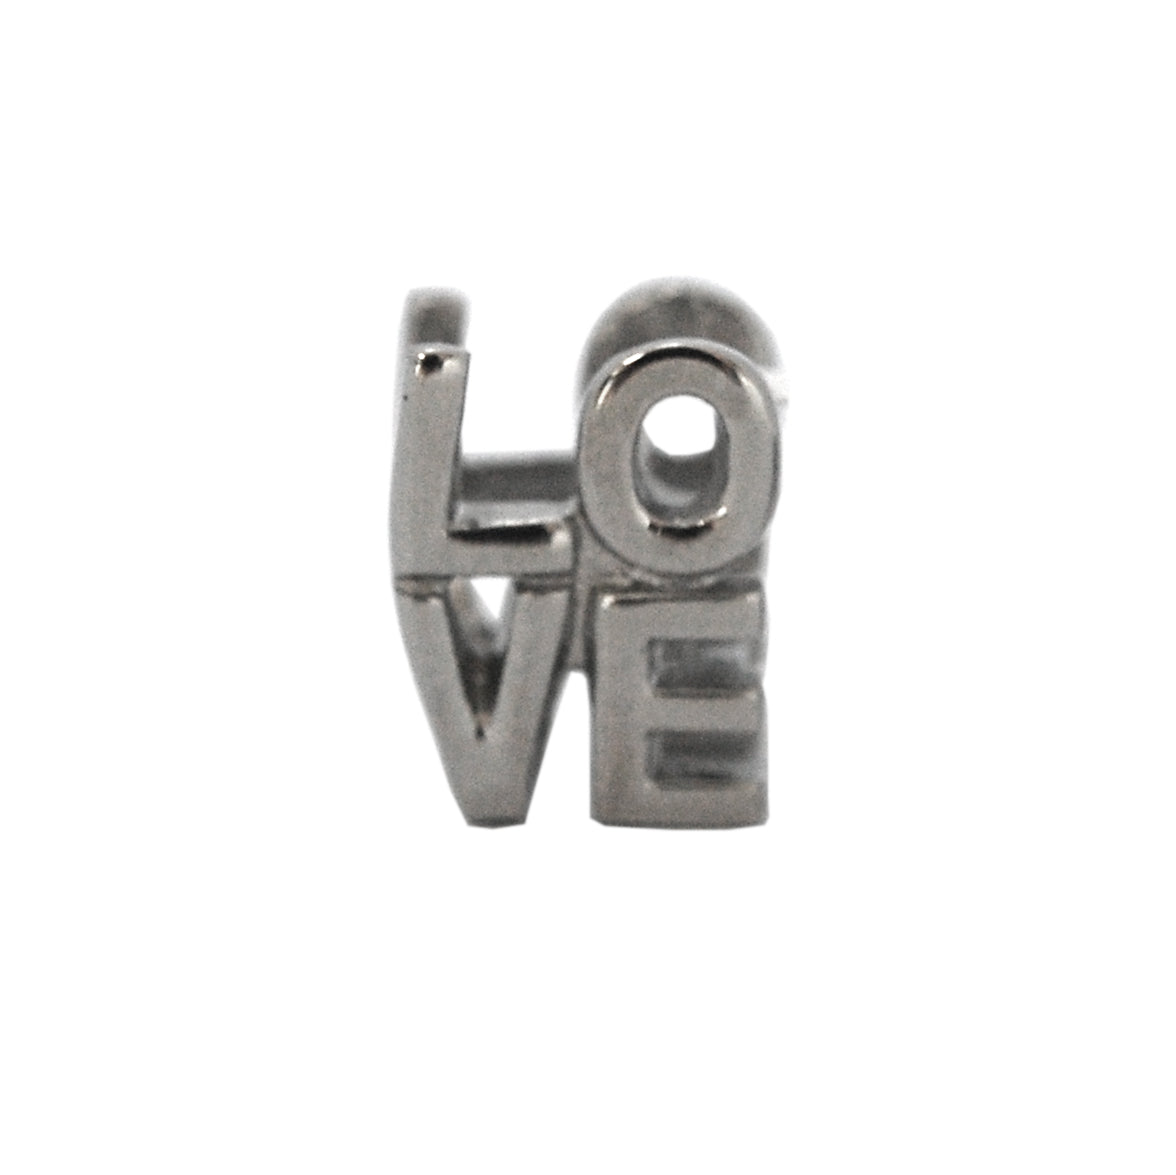 ESCM 4834: Pendant-Bracelet "L-O-V-E" Letter Charm